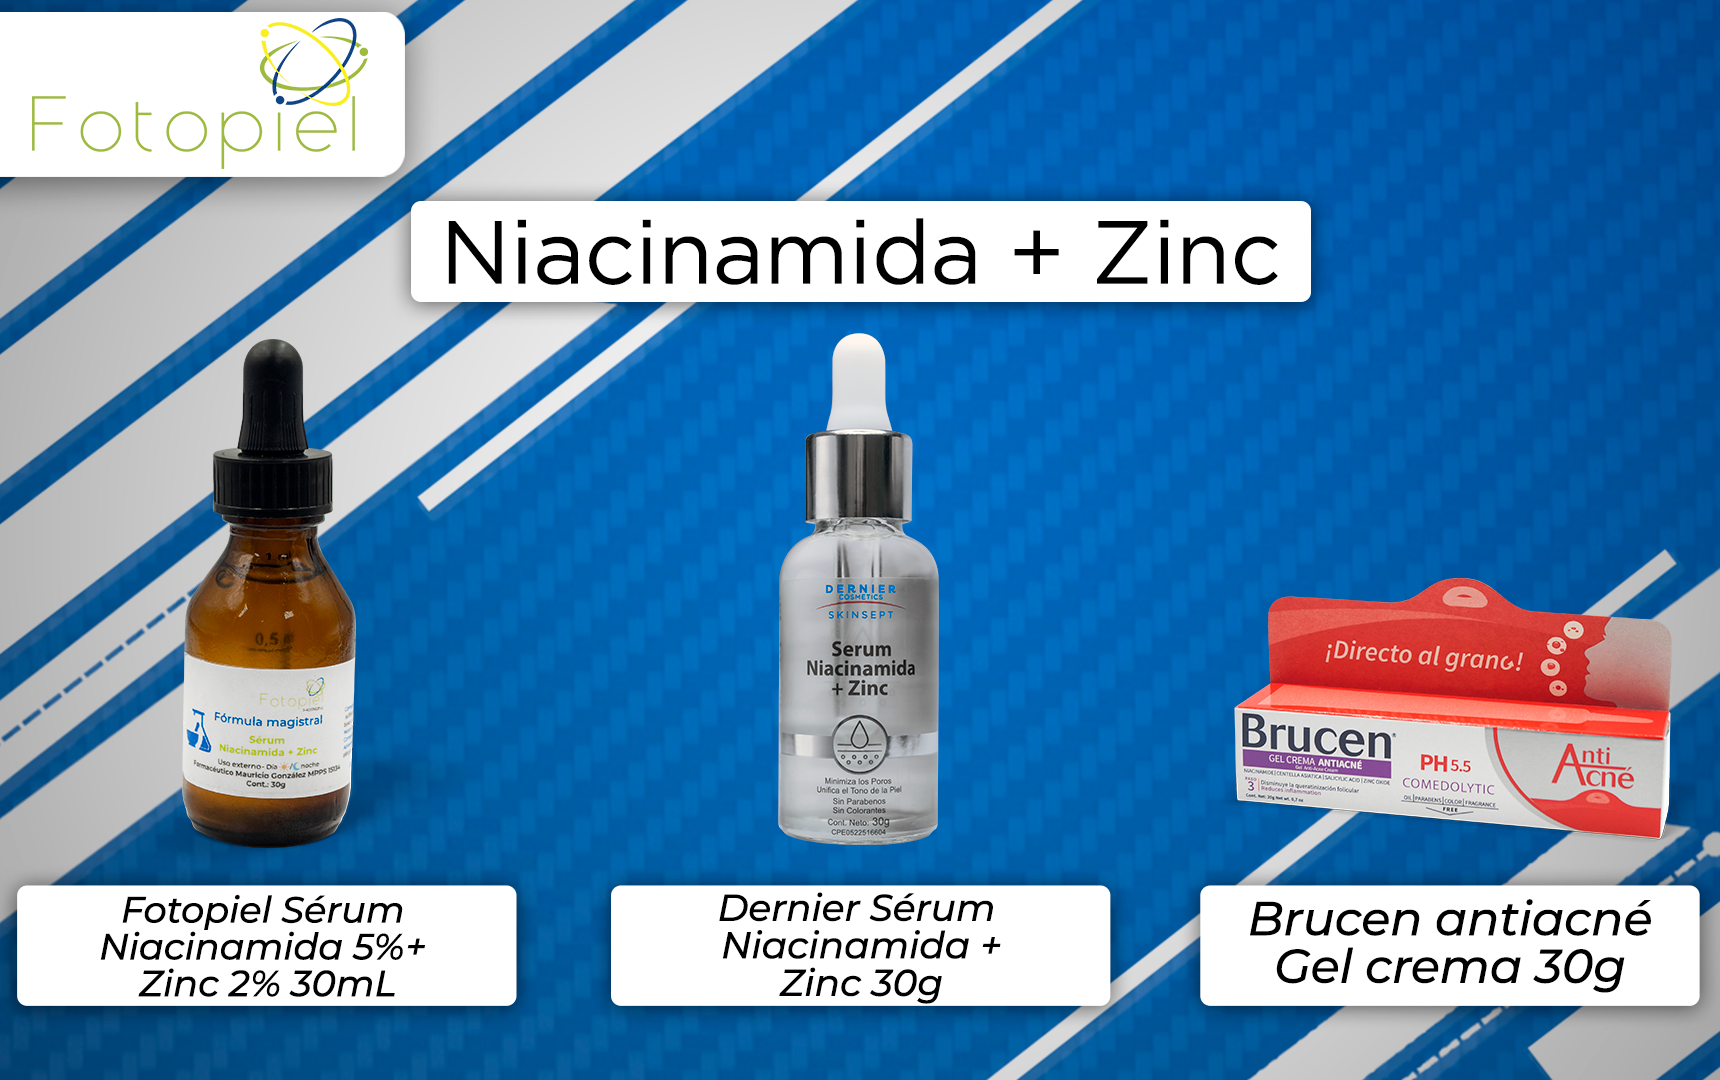 productos que contien niciacinamida & Zinc en su formulación y están disponibles en fotopiel